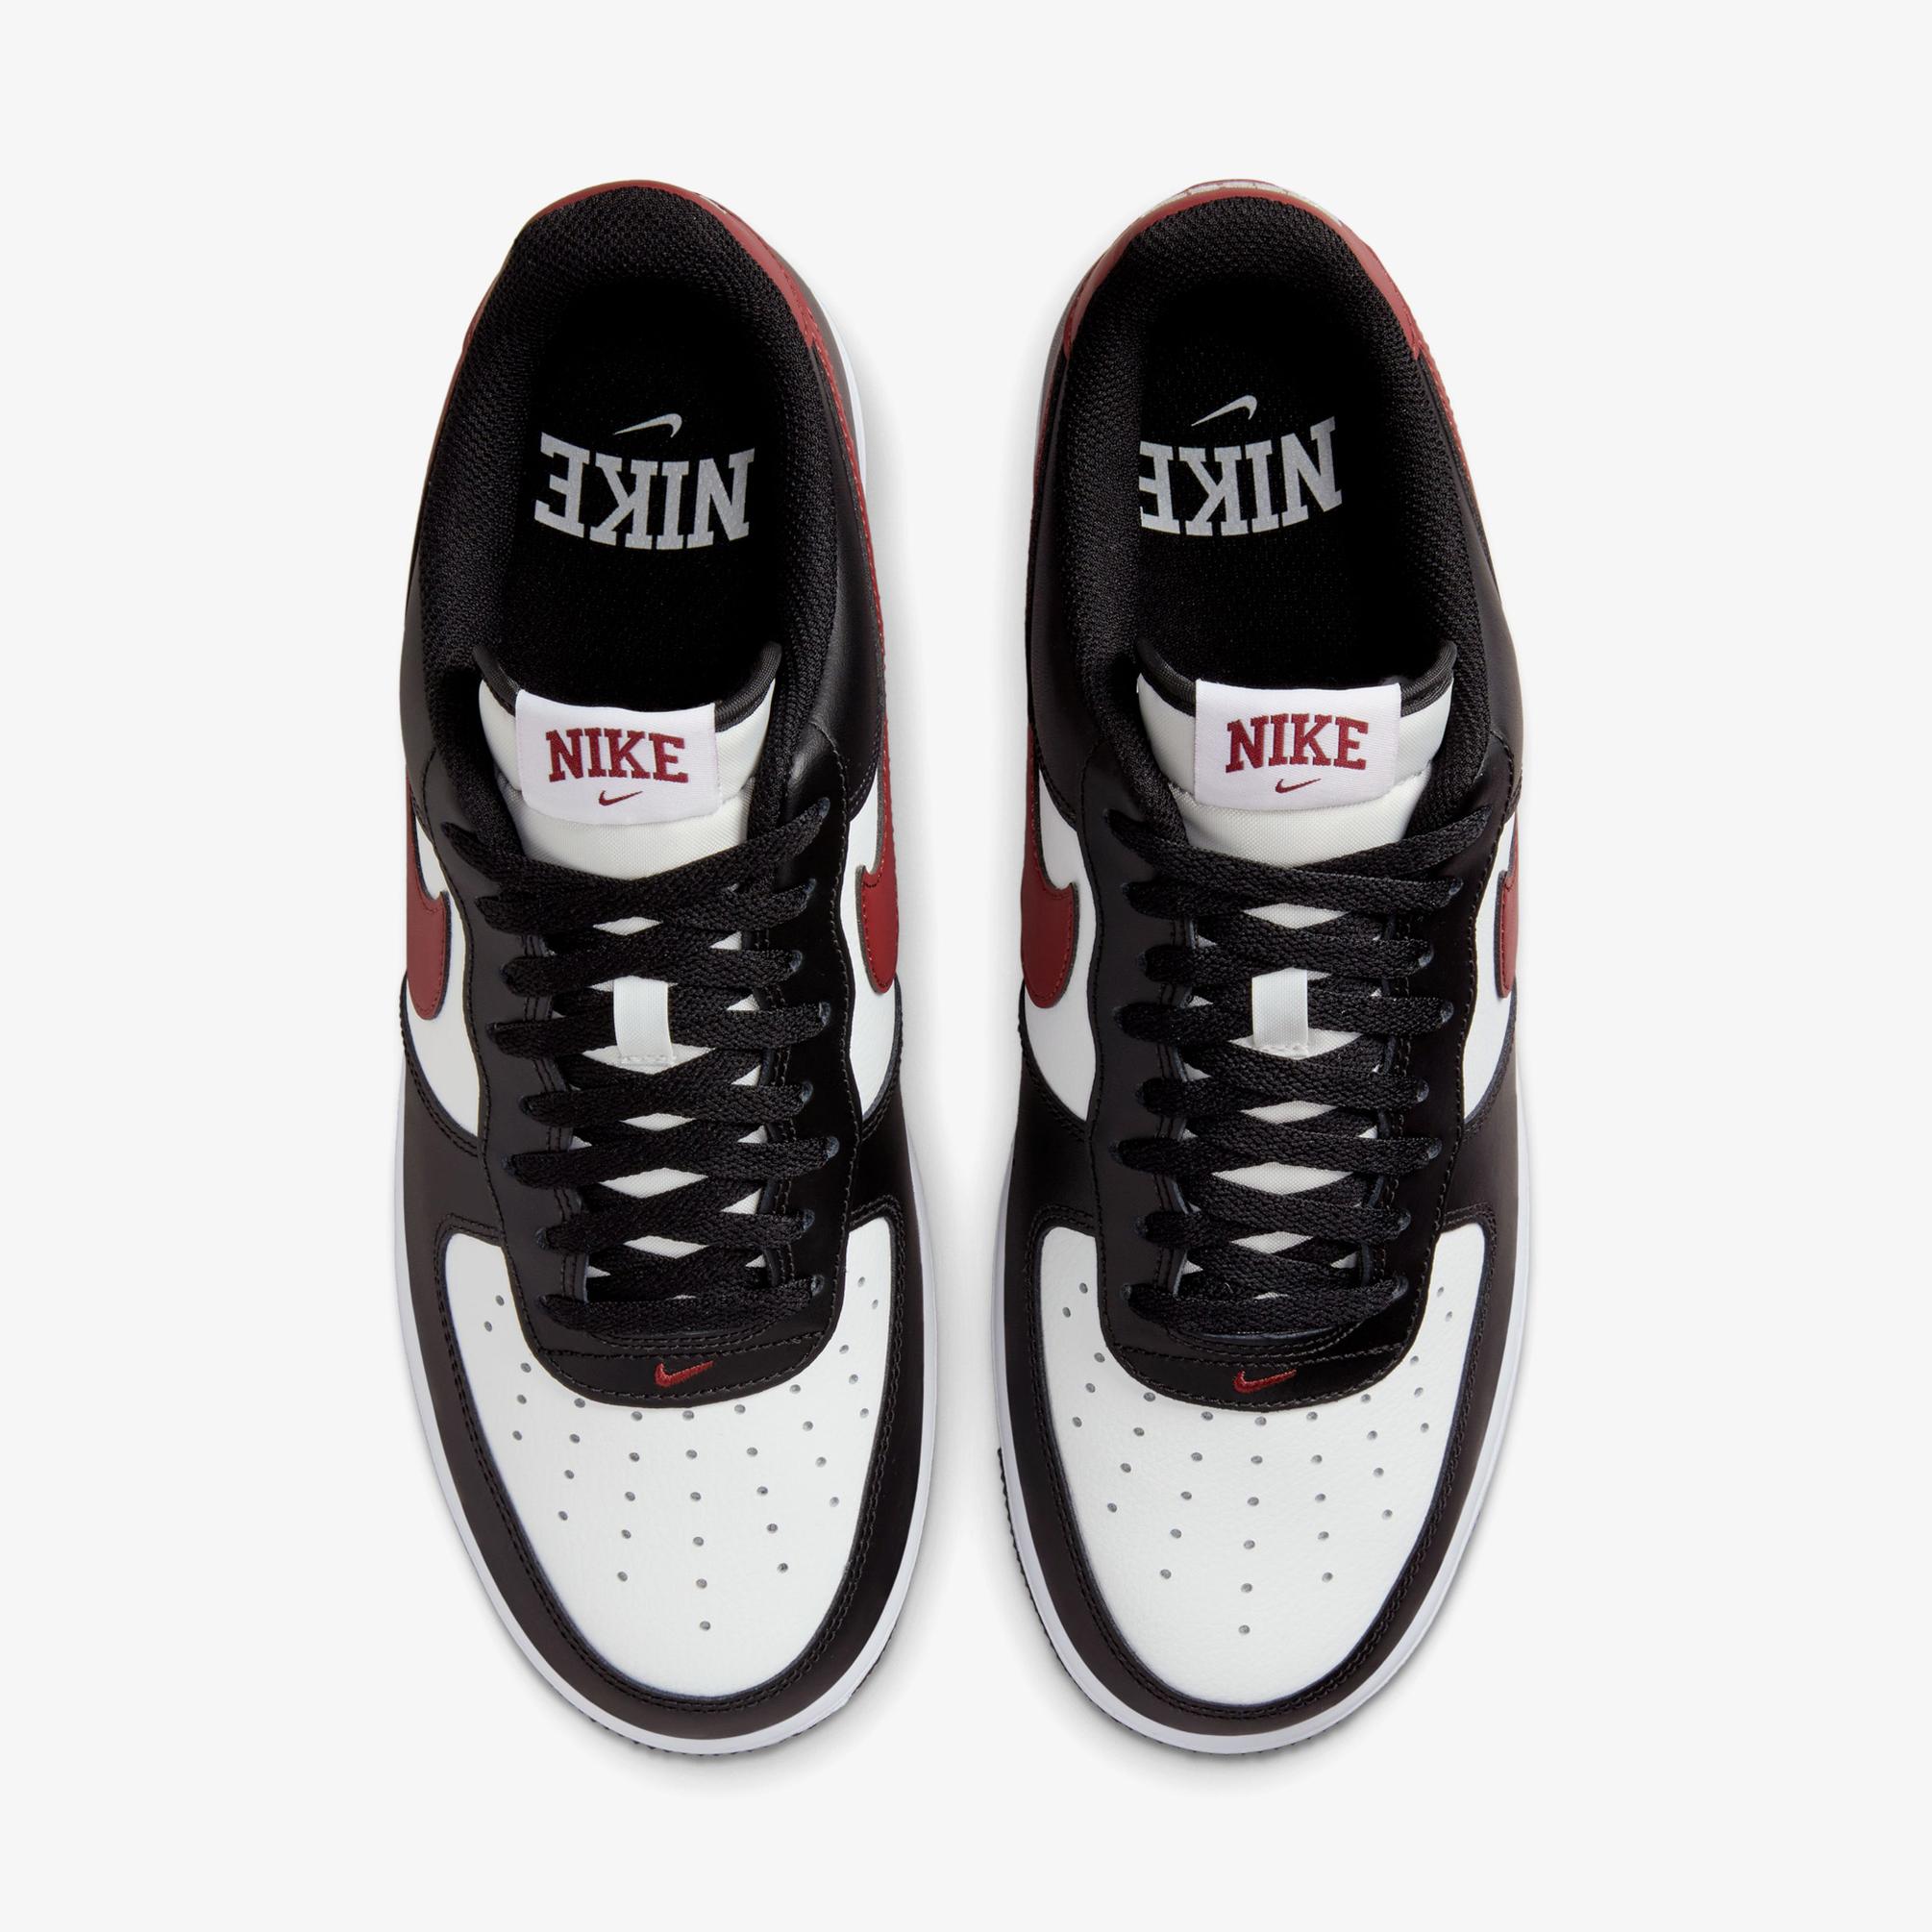  Nike Air Force 1 07 Sportswear Erkek Siyah/Kırmızı Spor Ayakkabı